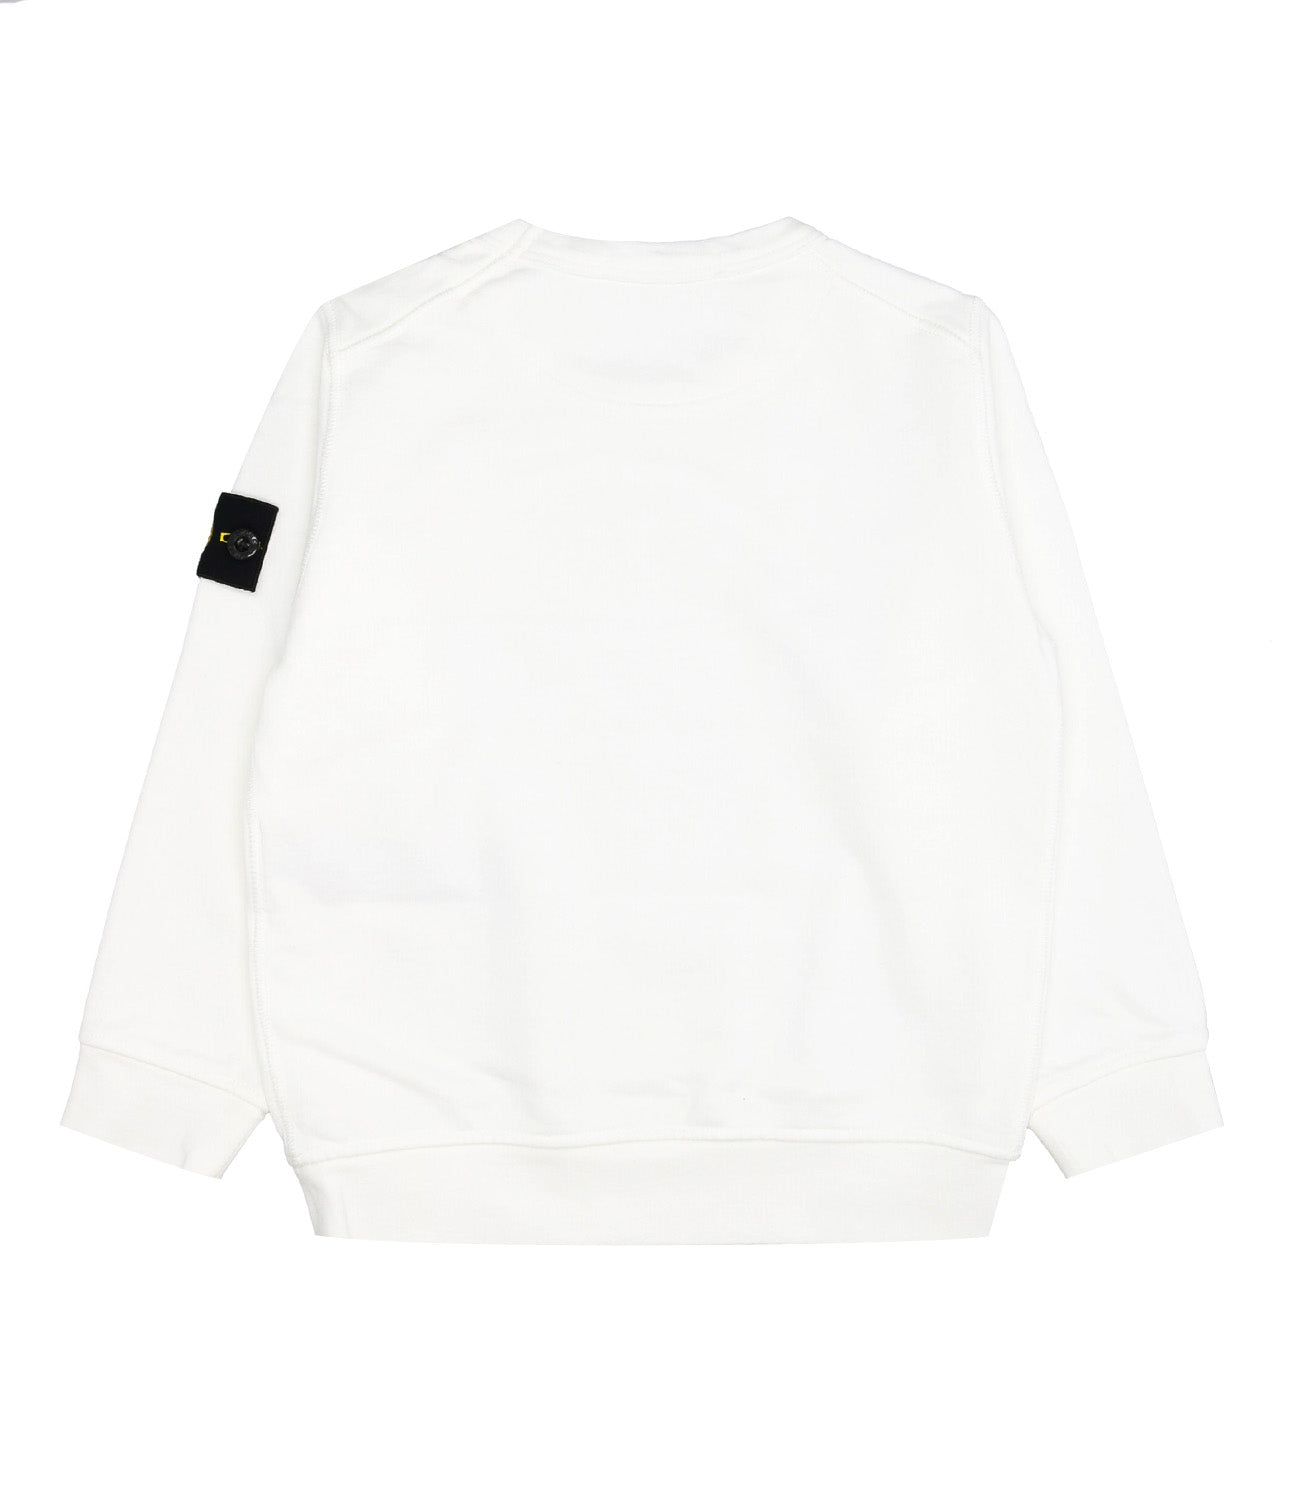 Stone Island Junior | Sweatshirt White